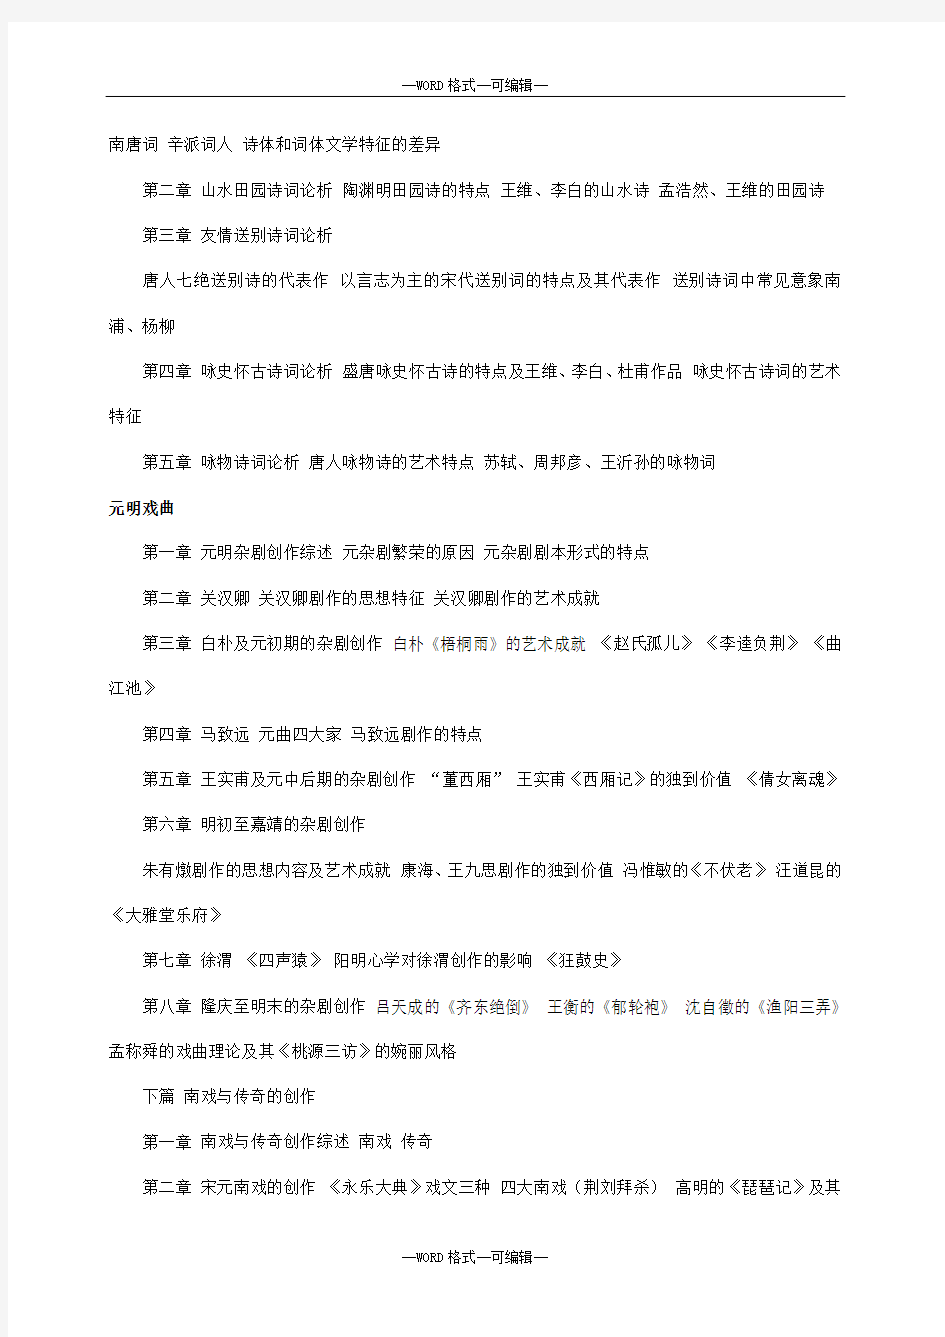 汉语言文学专业学士学位考试合考试复习提纲汇总